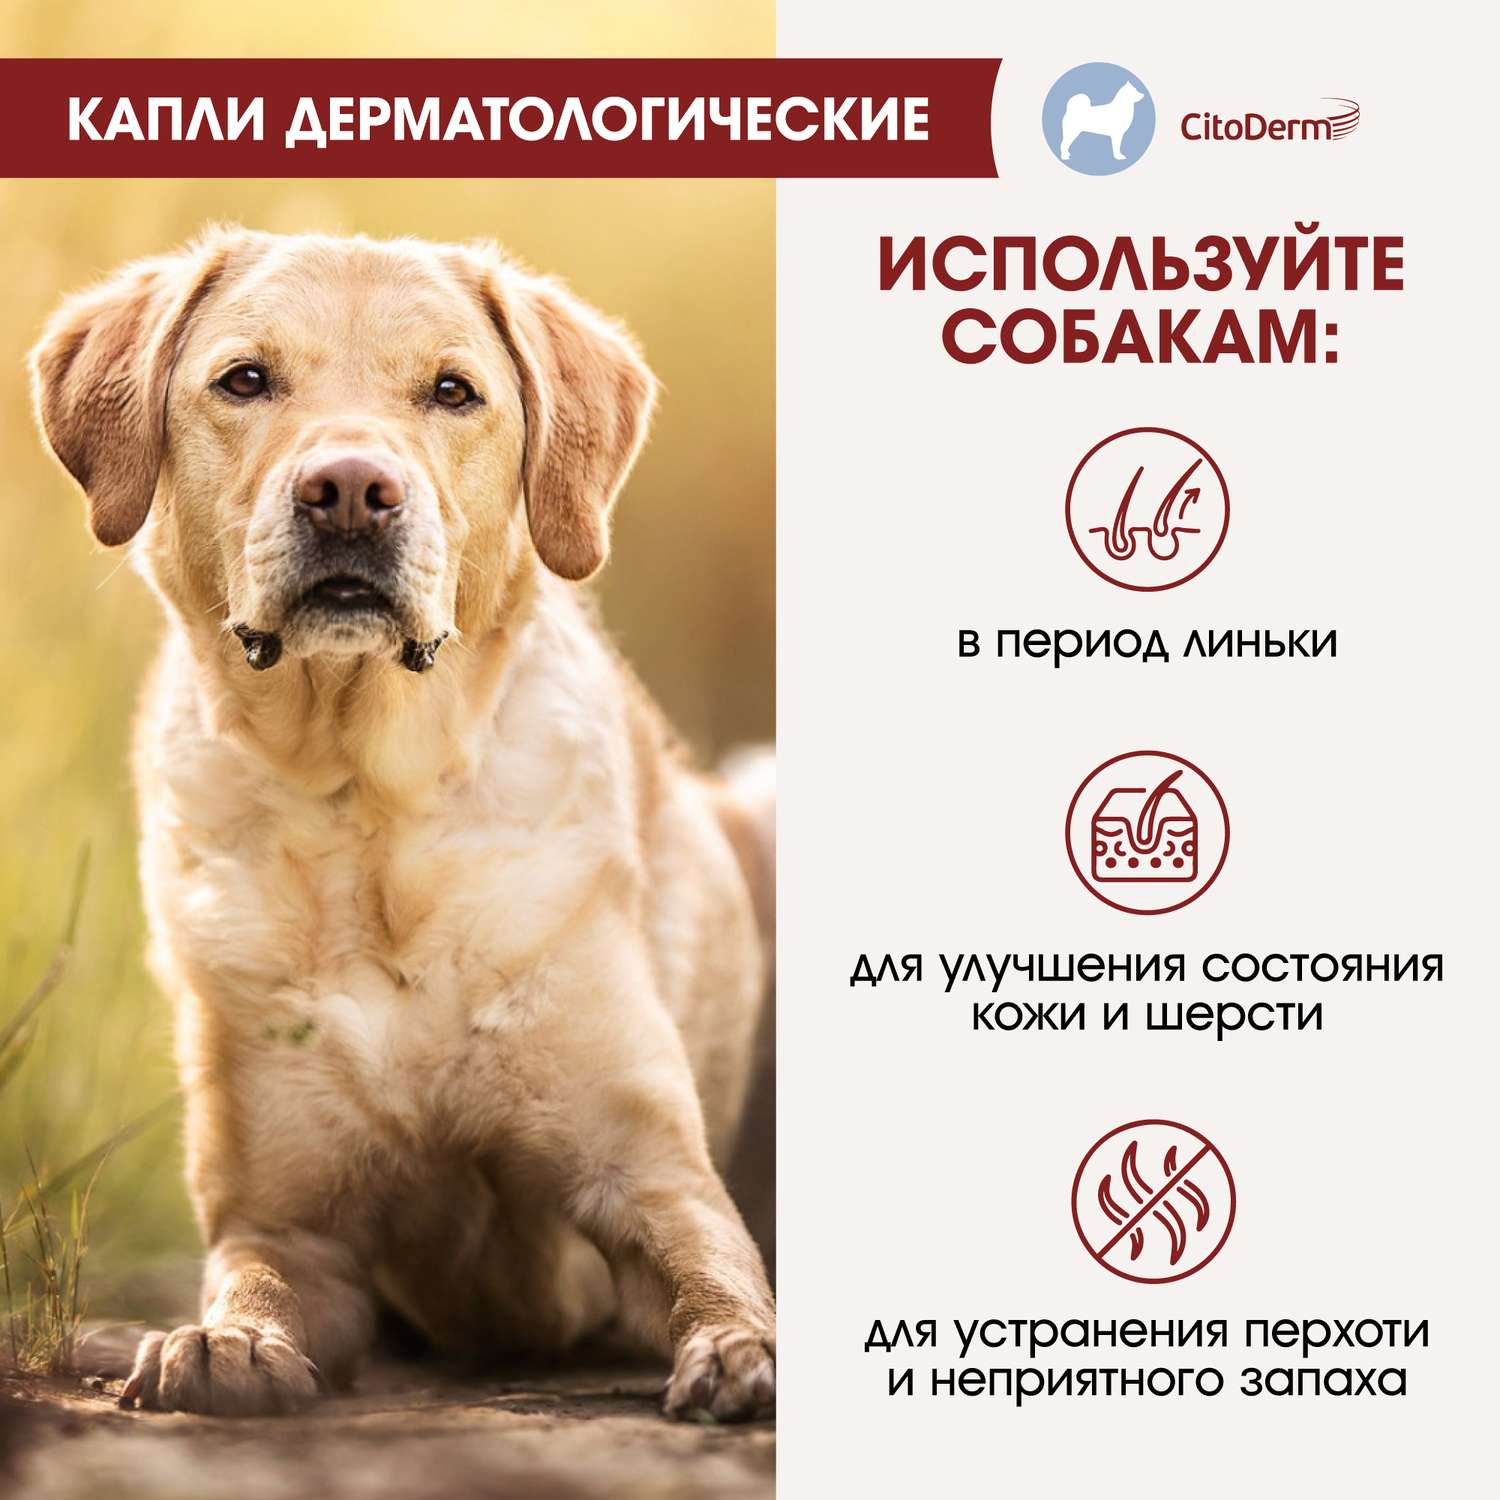 Капли для собак CitoDerm 10-30кг дерматологические 3мл - фото 4